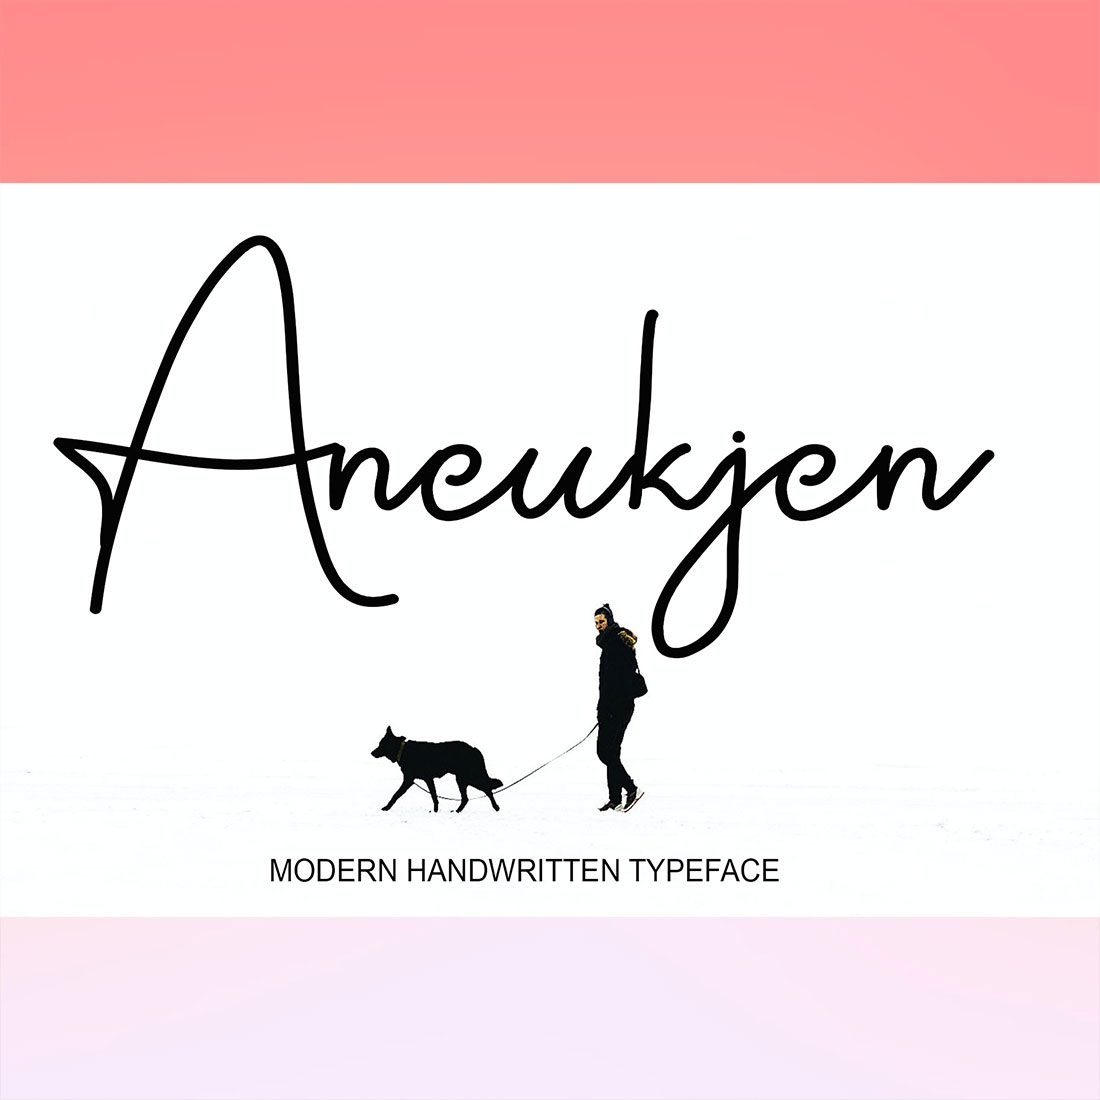 Aneukjen Signature Font main cover.